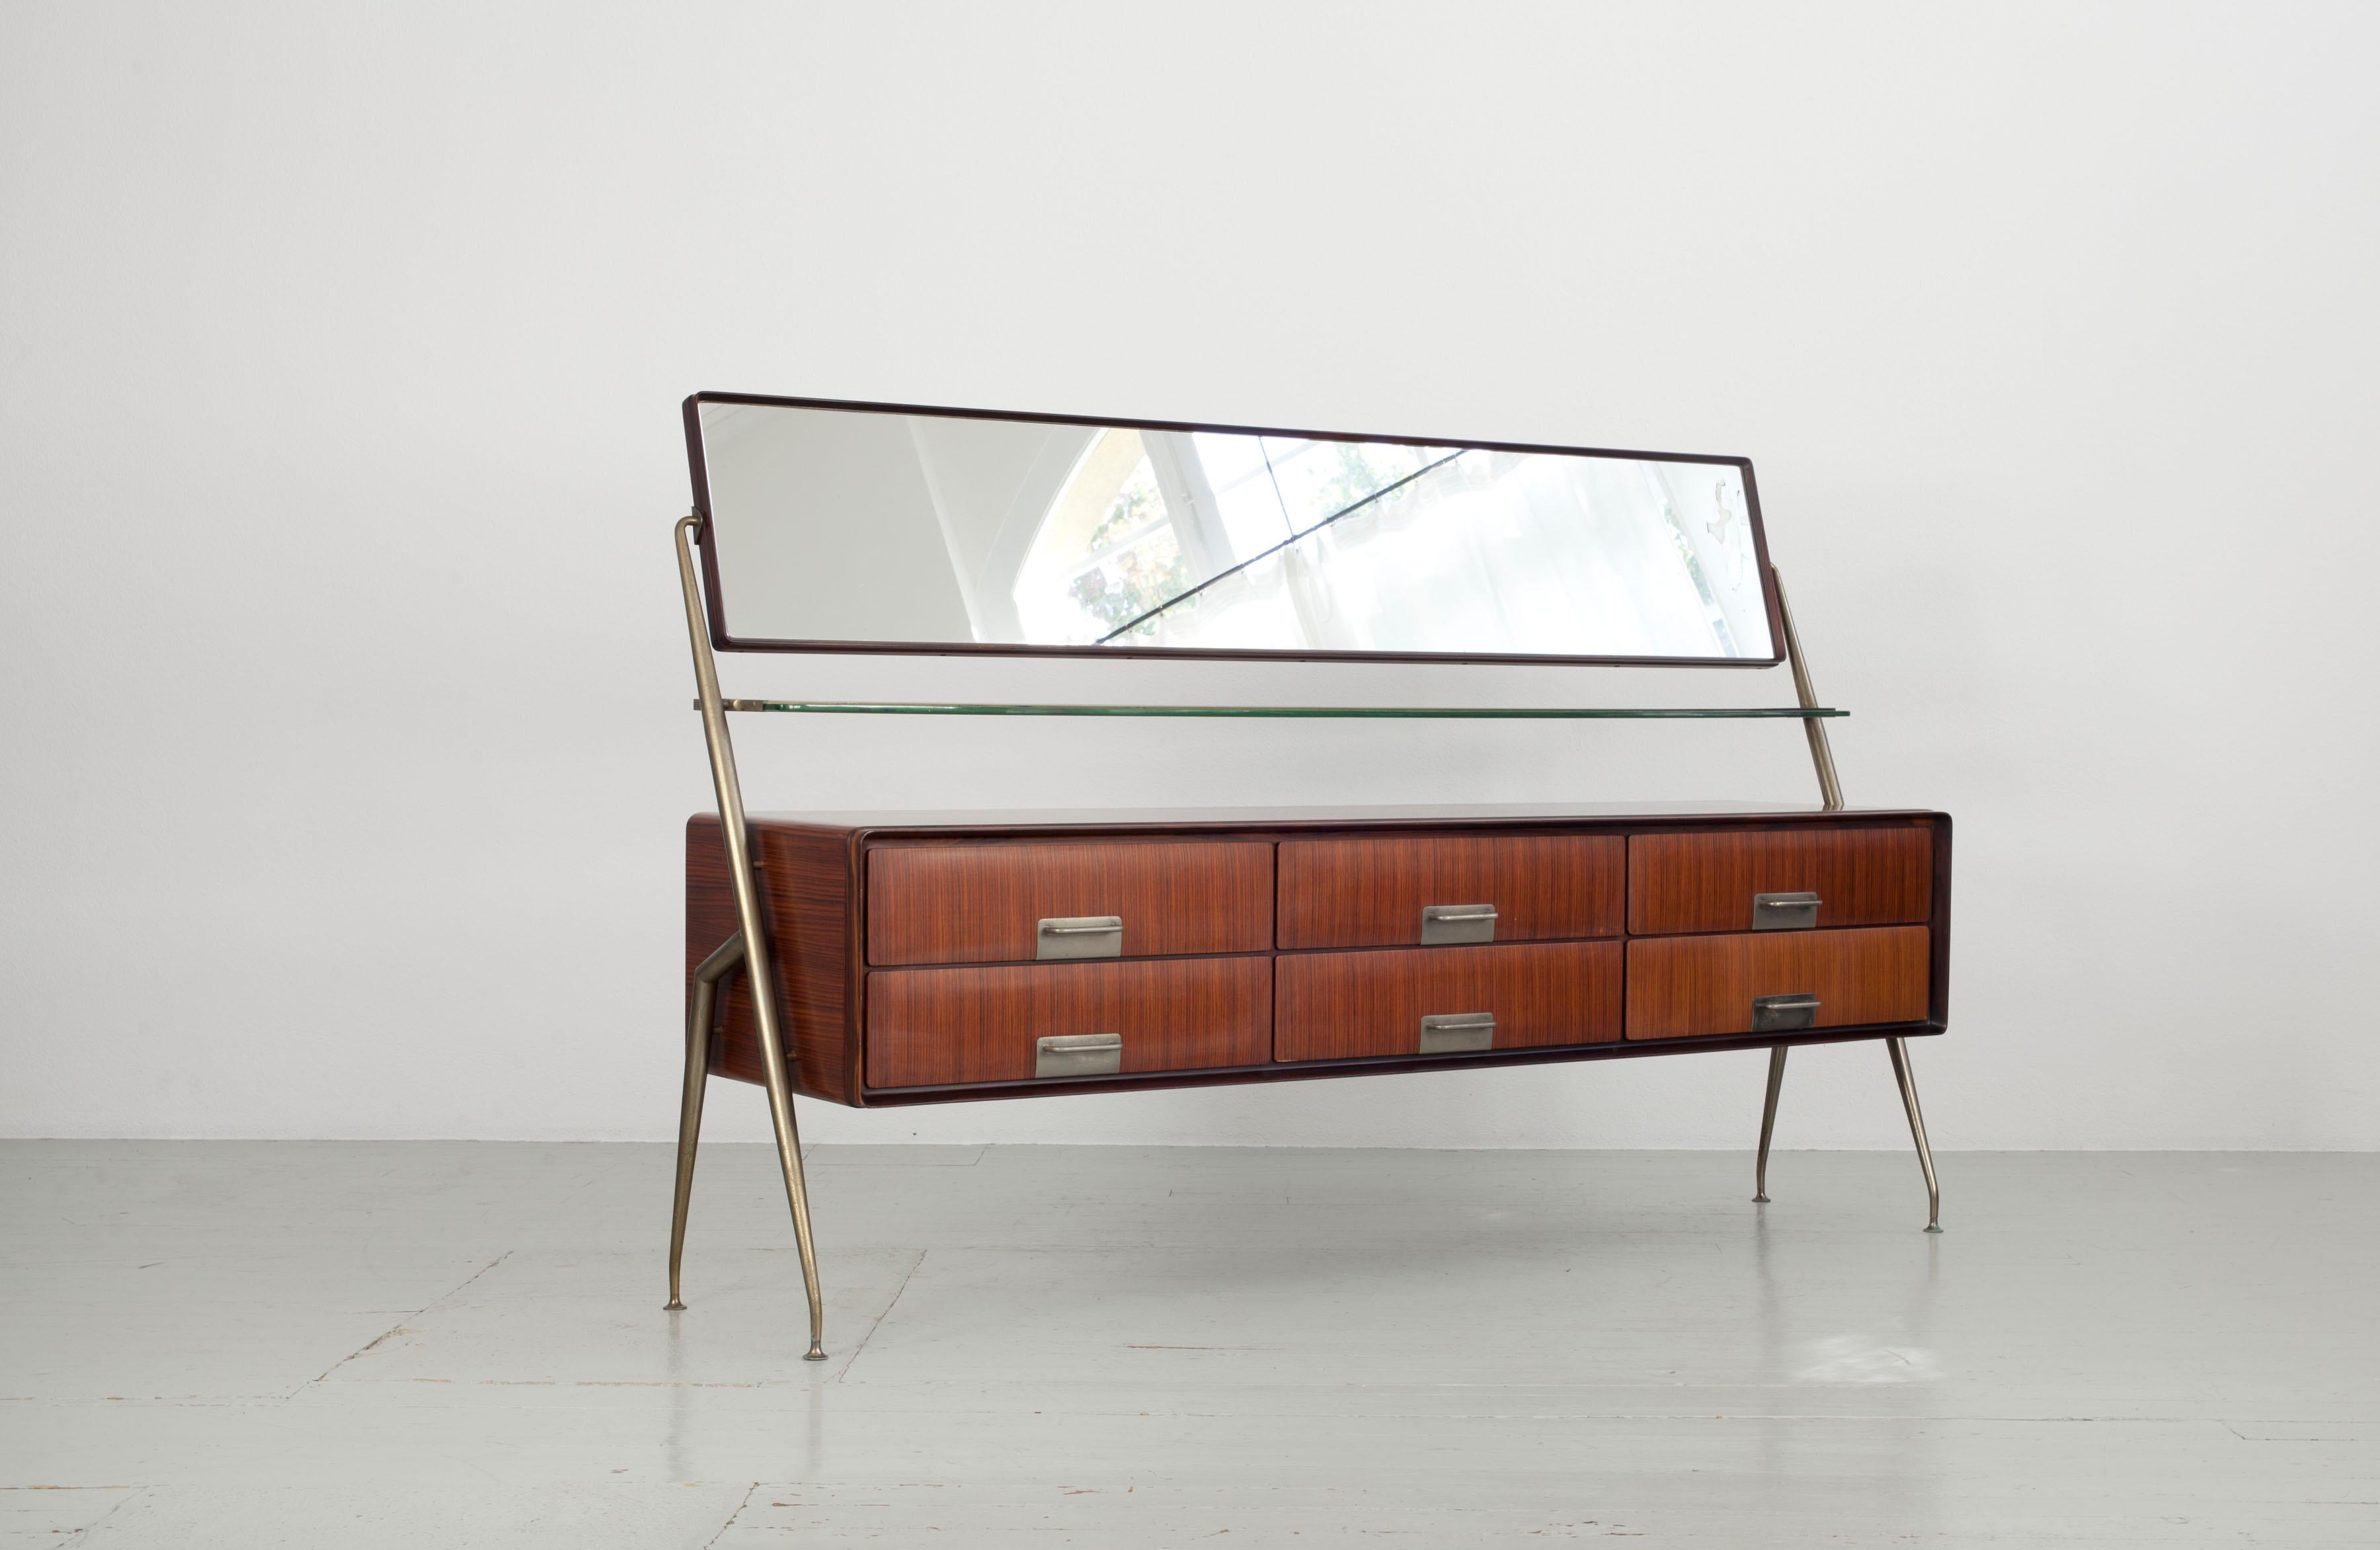 Sideboard mit Schubladen, vernickeltes Messing, Spiegelglas und Glasplatte.
Design: Silvio Cavatorta, Italien 1950er Jahre.